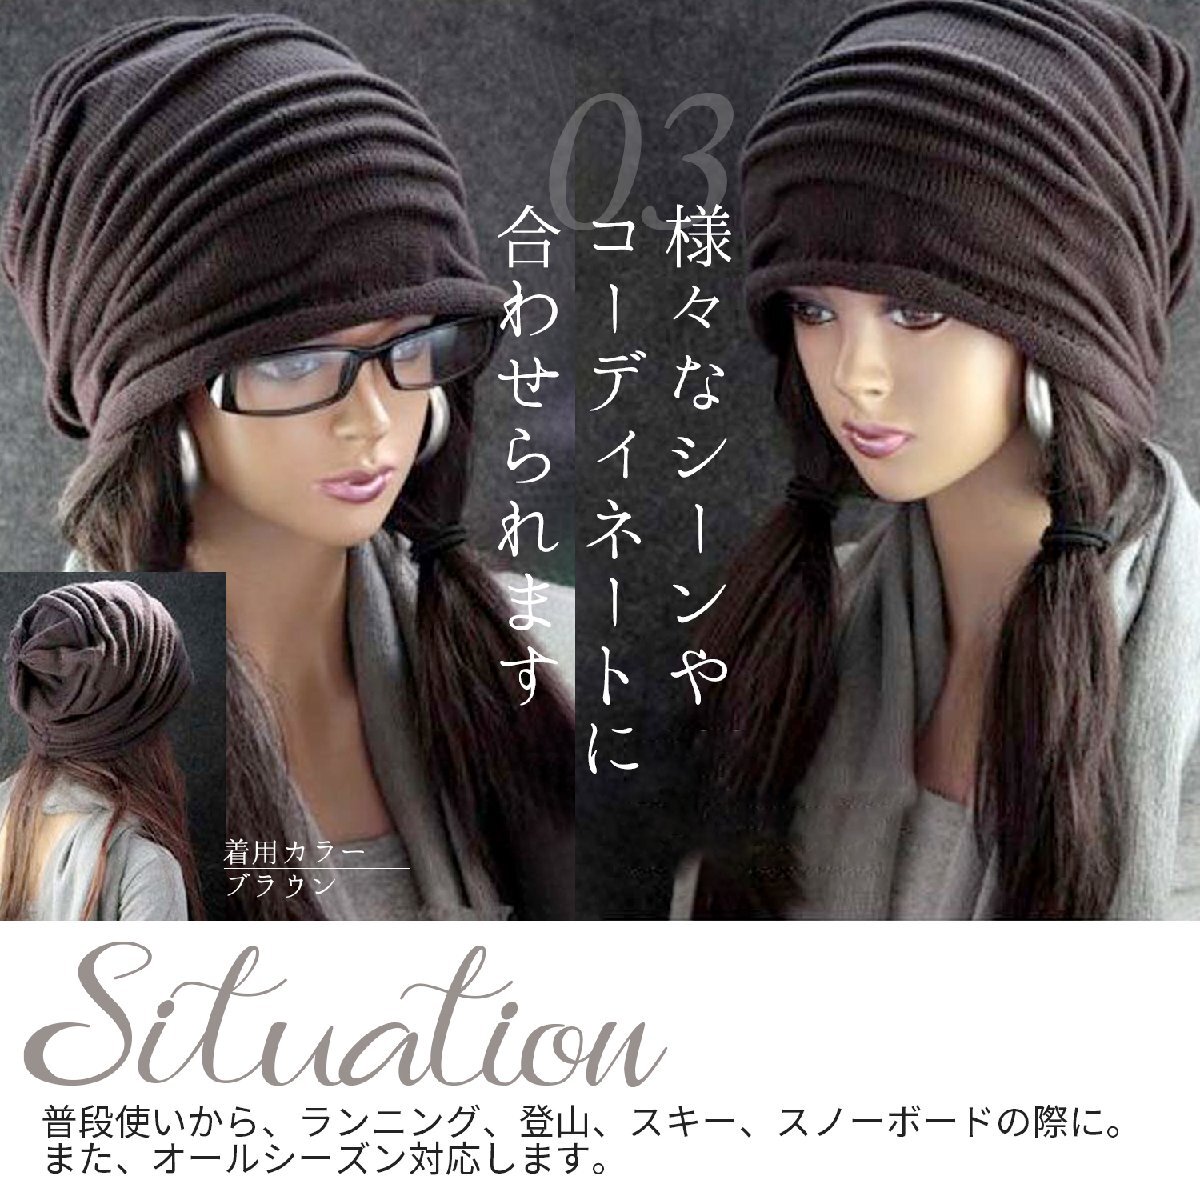  вязаная шапка колпак шляпа мужской женский модный цвет простой одноцветный для мужчин и женщин серый свободно красивый темно-серый новый товар 1 иен старт 